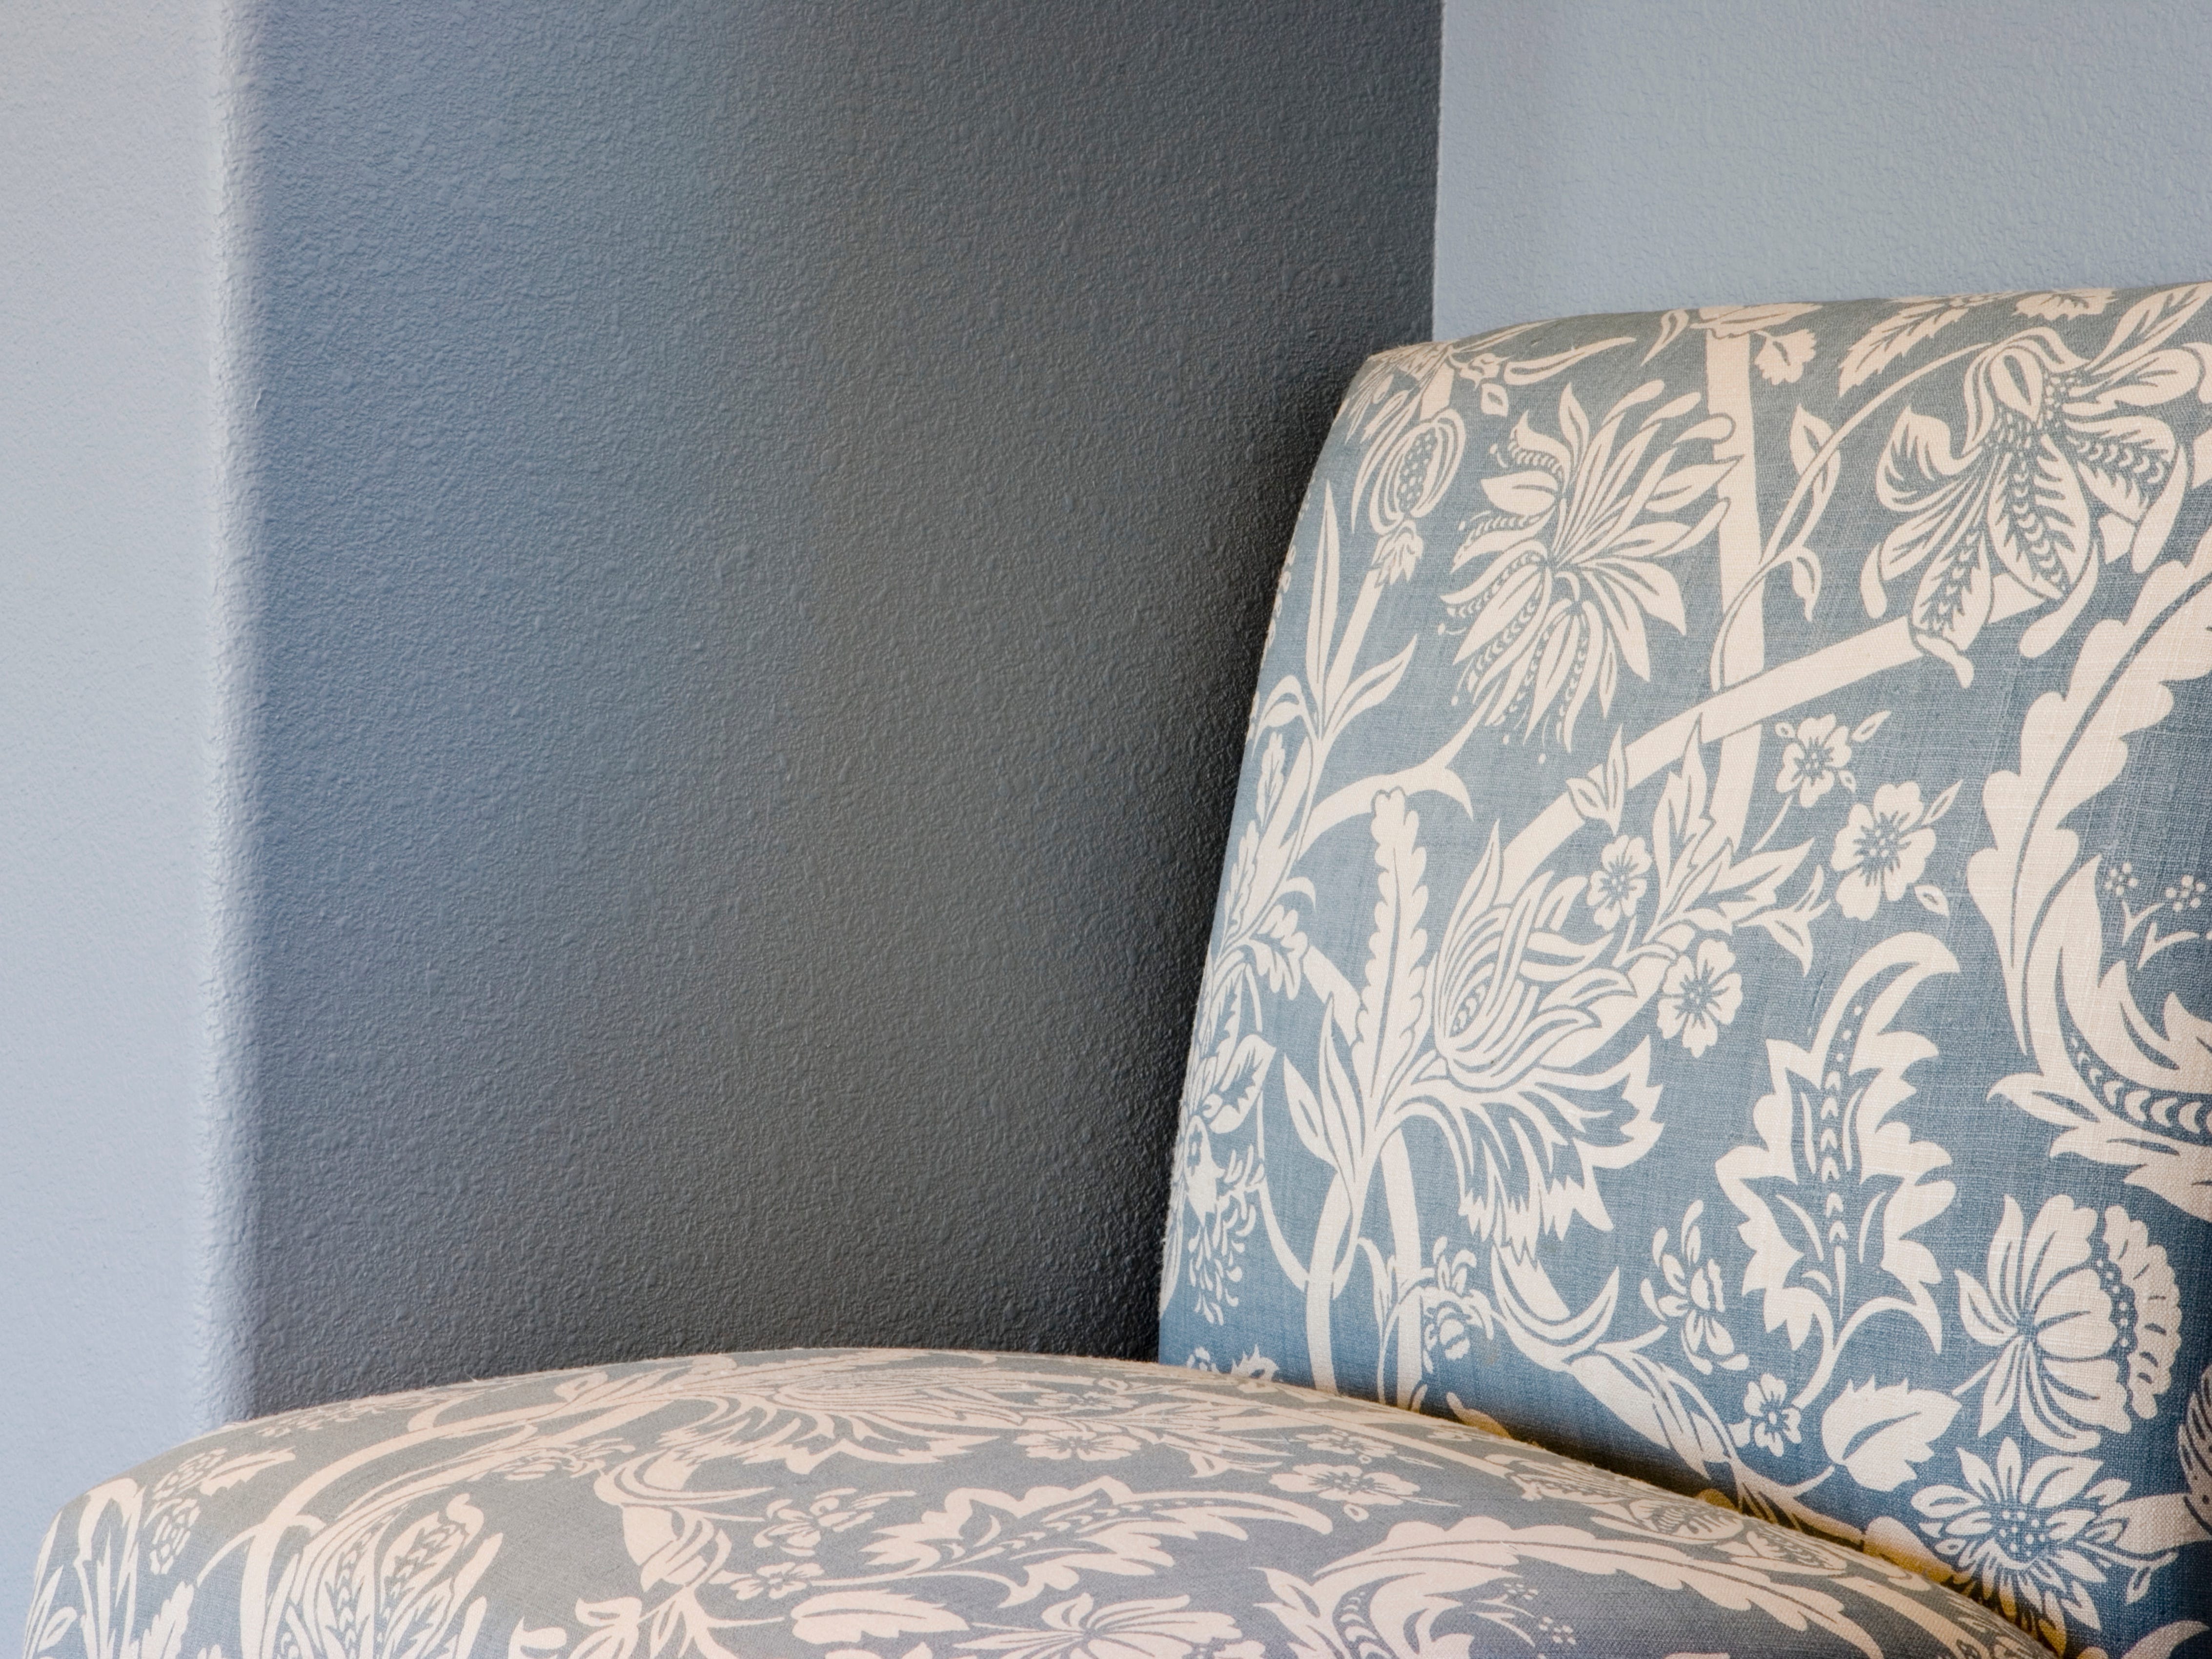 Blau-weiß gepolsterter Stuhl vor grauer Wand